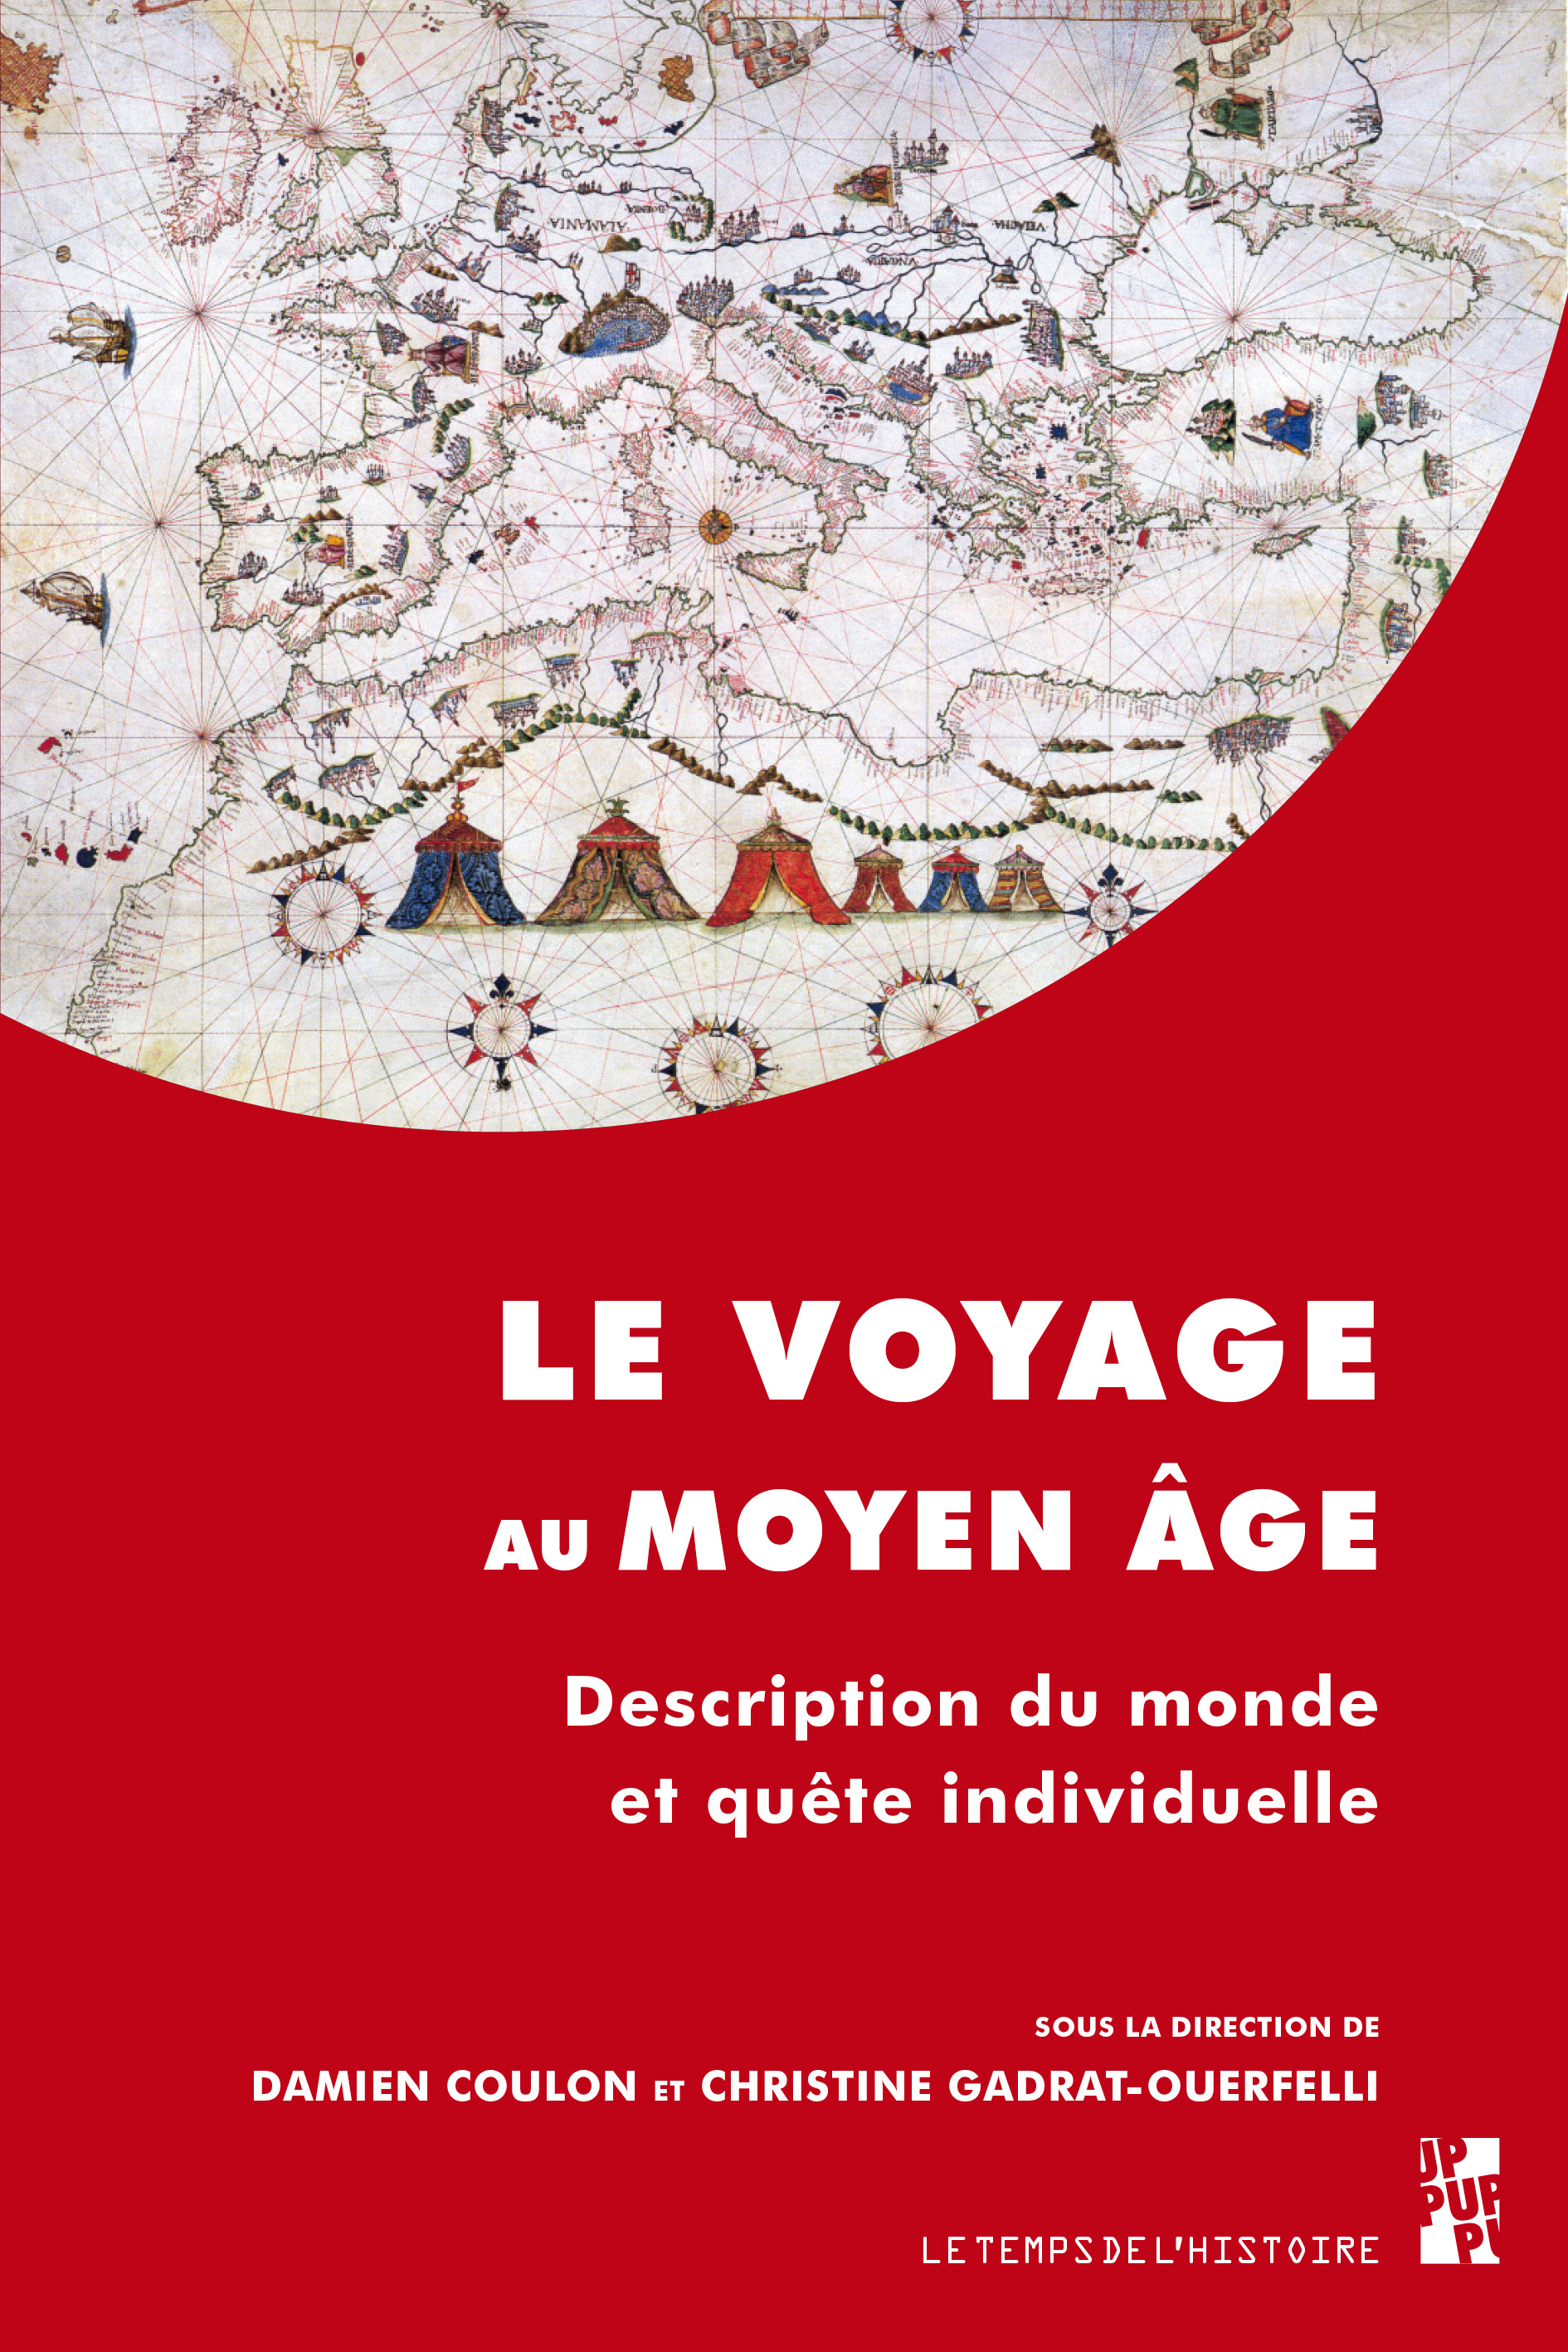 Le voyage au Moyen Age. Description du monde et quête individuelle, 2017, 210 p.